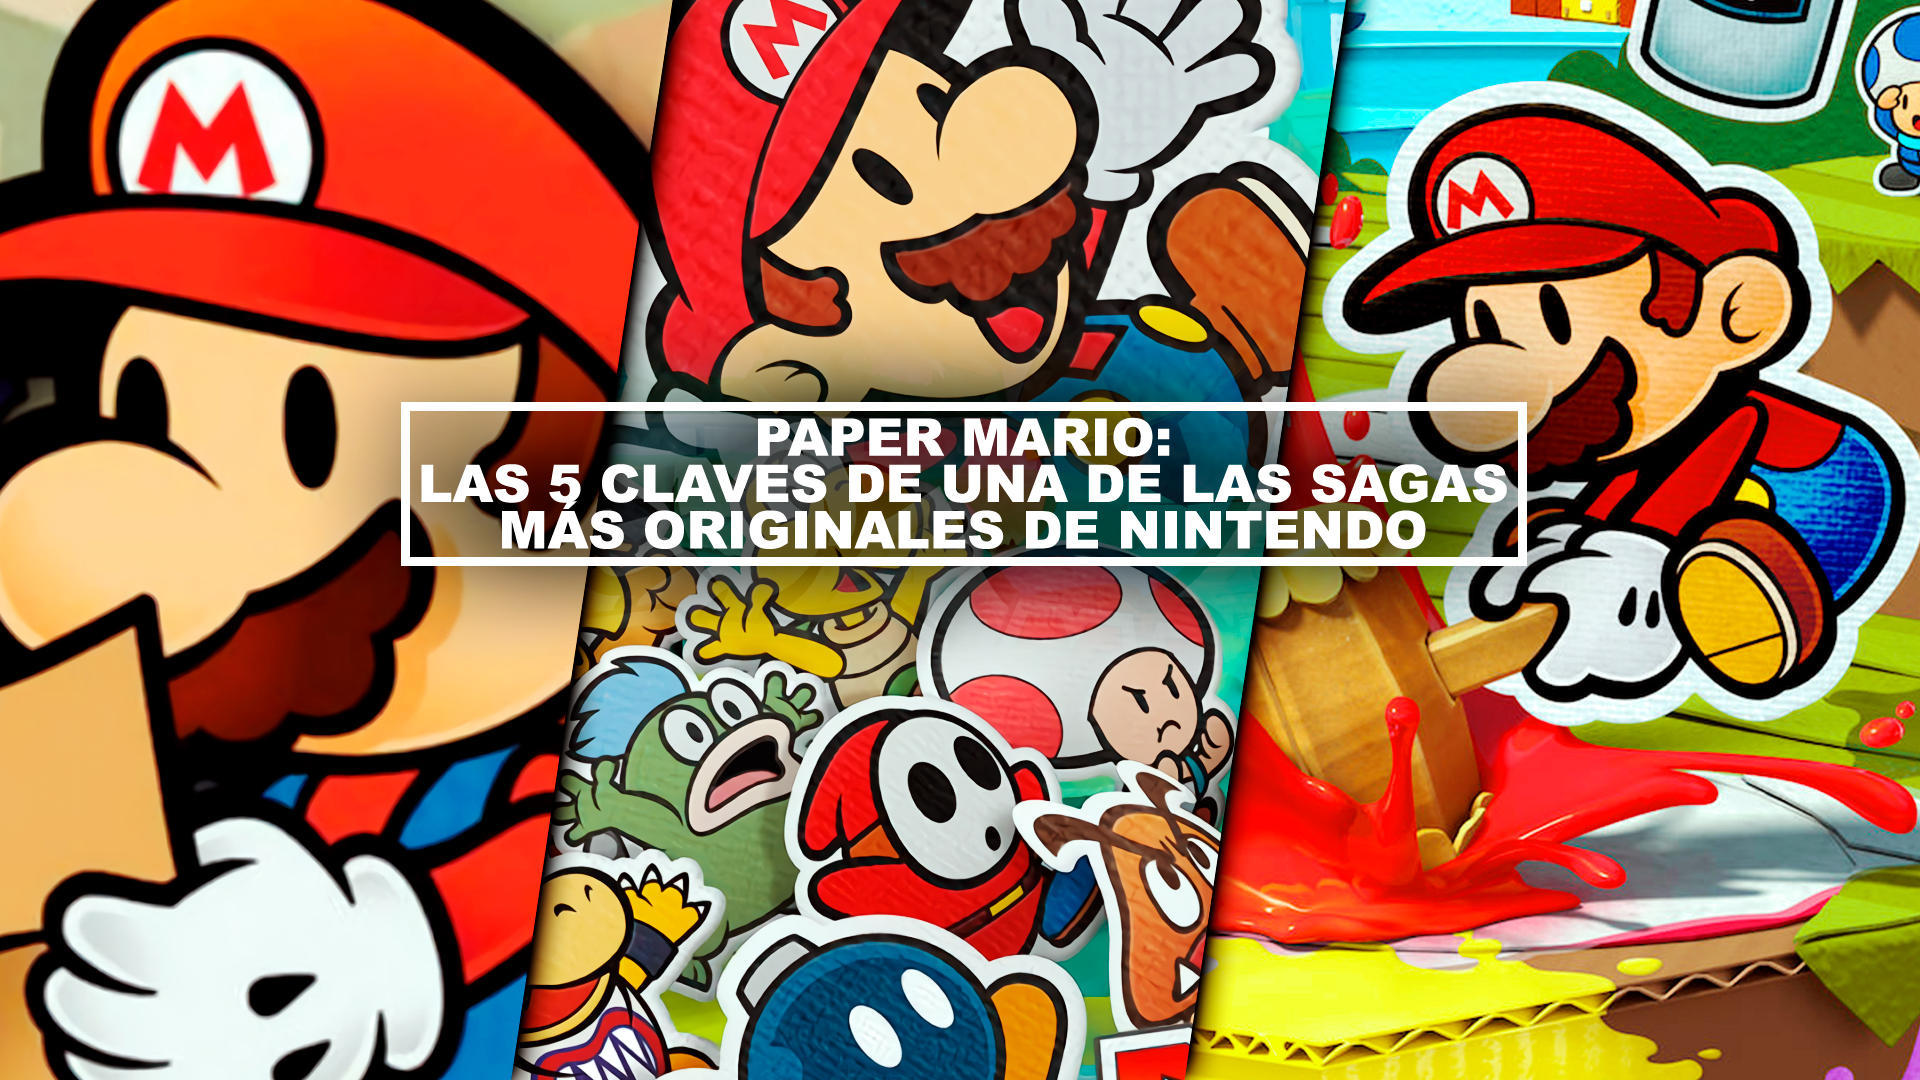 Paper Mario: Las 5 claves de una de las sagas ms originales de Nintendo